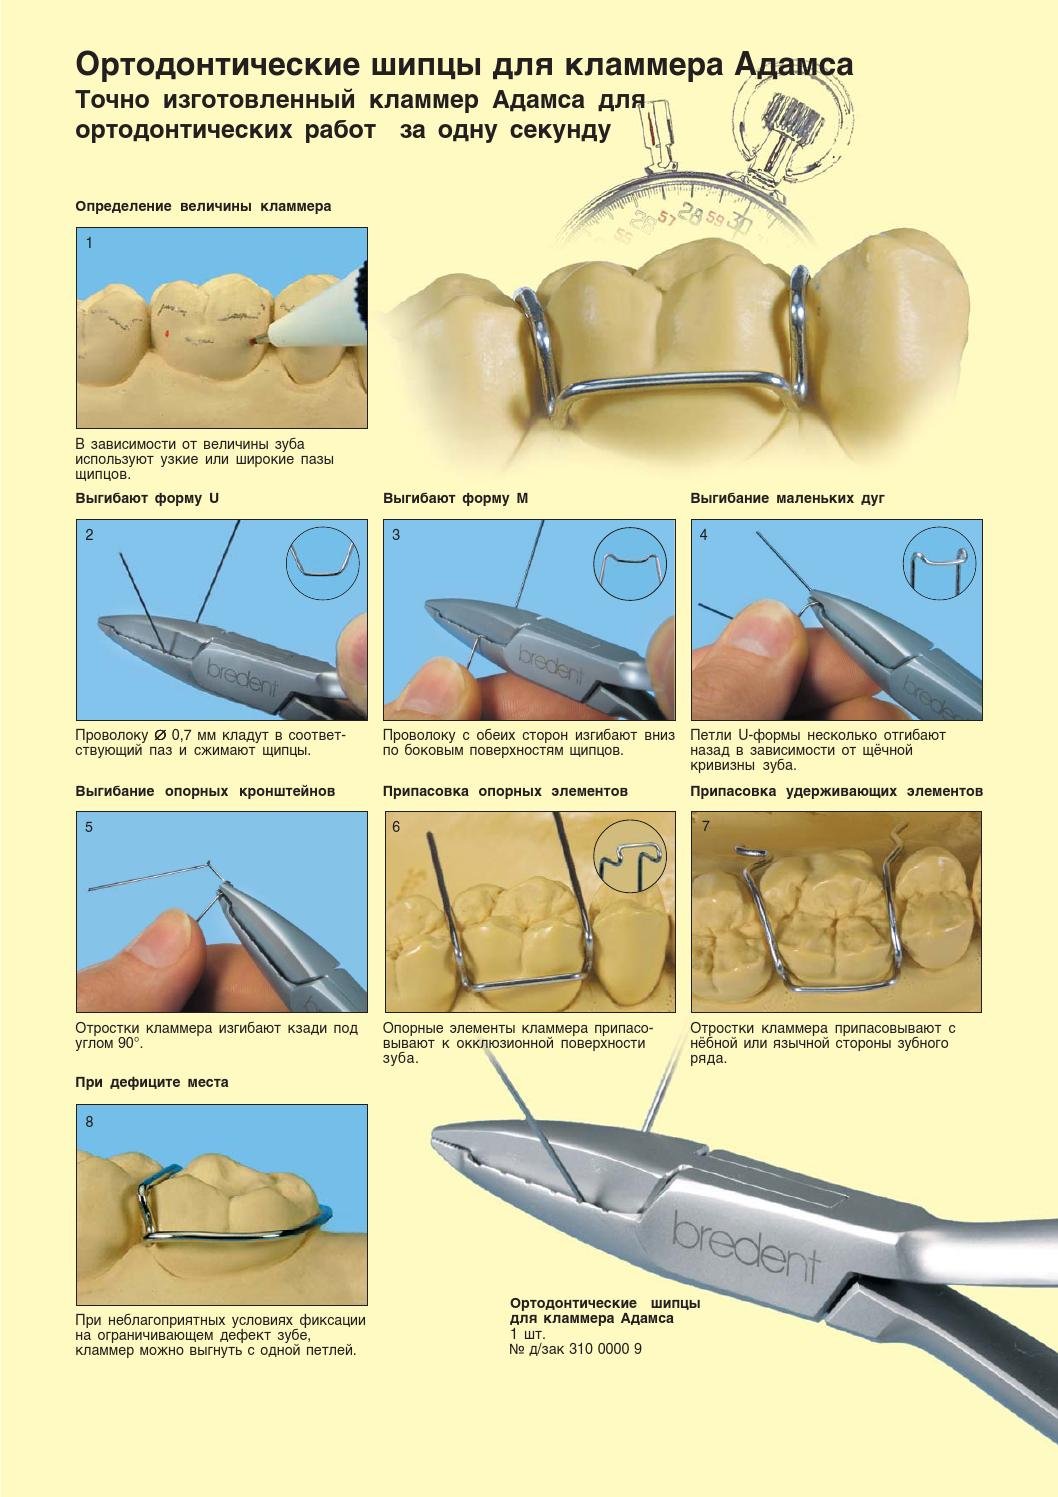 Кламмер Адамса в ортодонтии